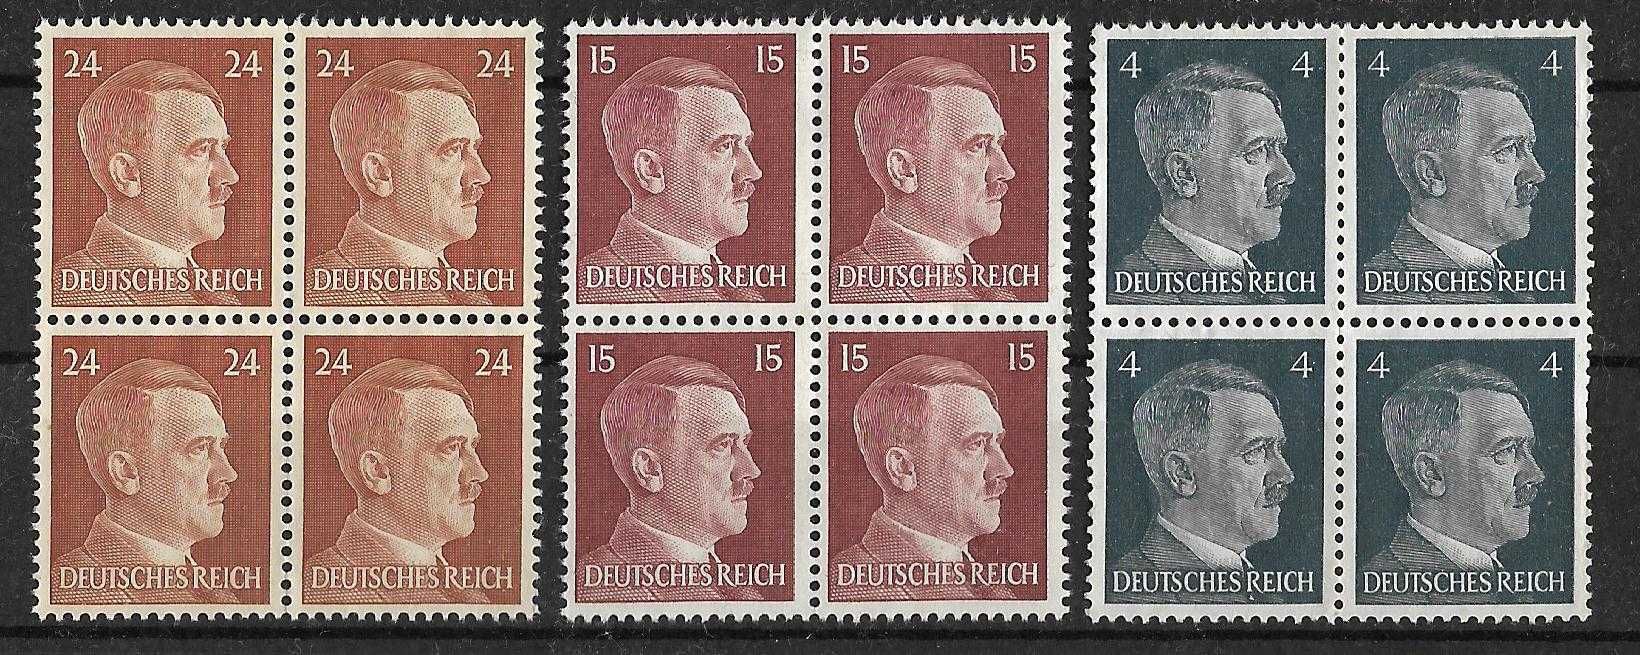 Set de timbre Germania WWII, pret 35 lei toate